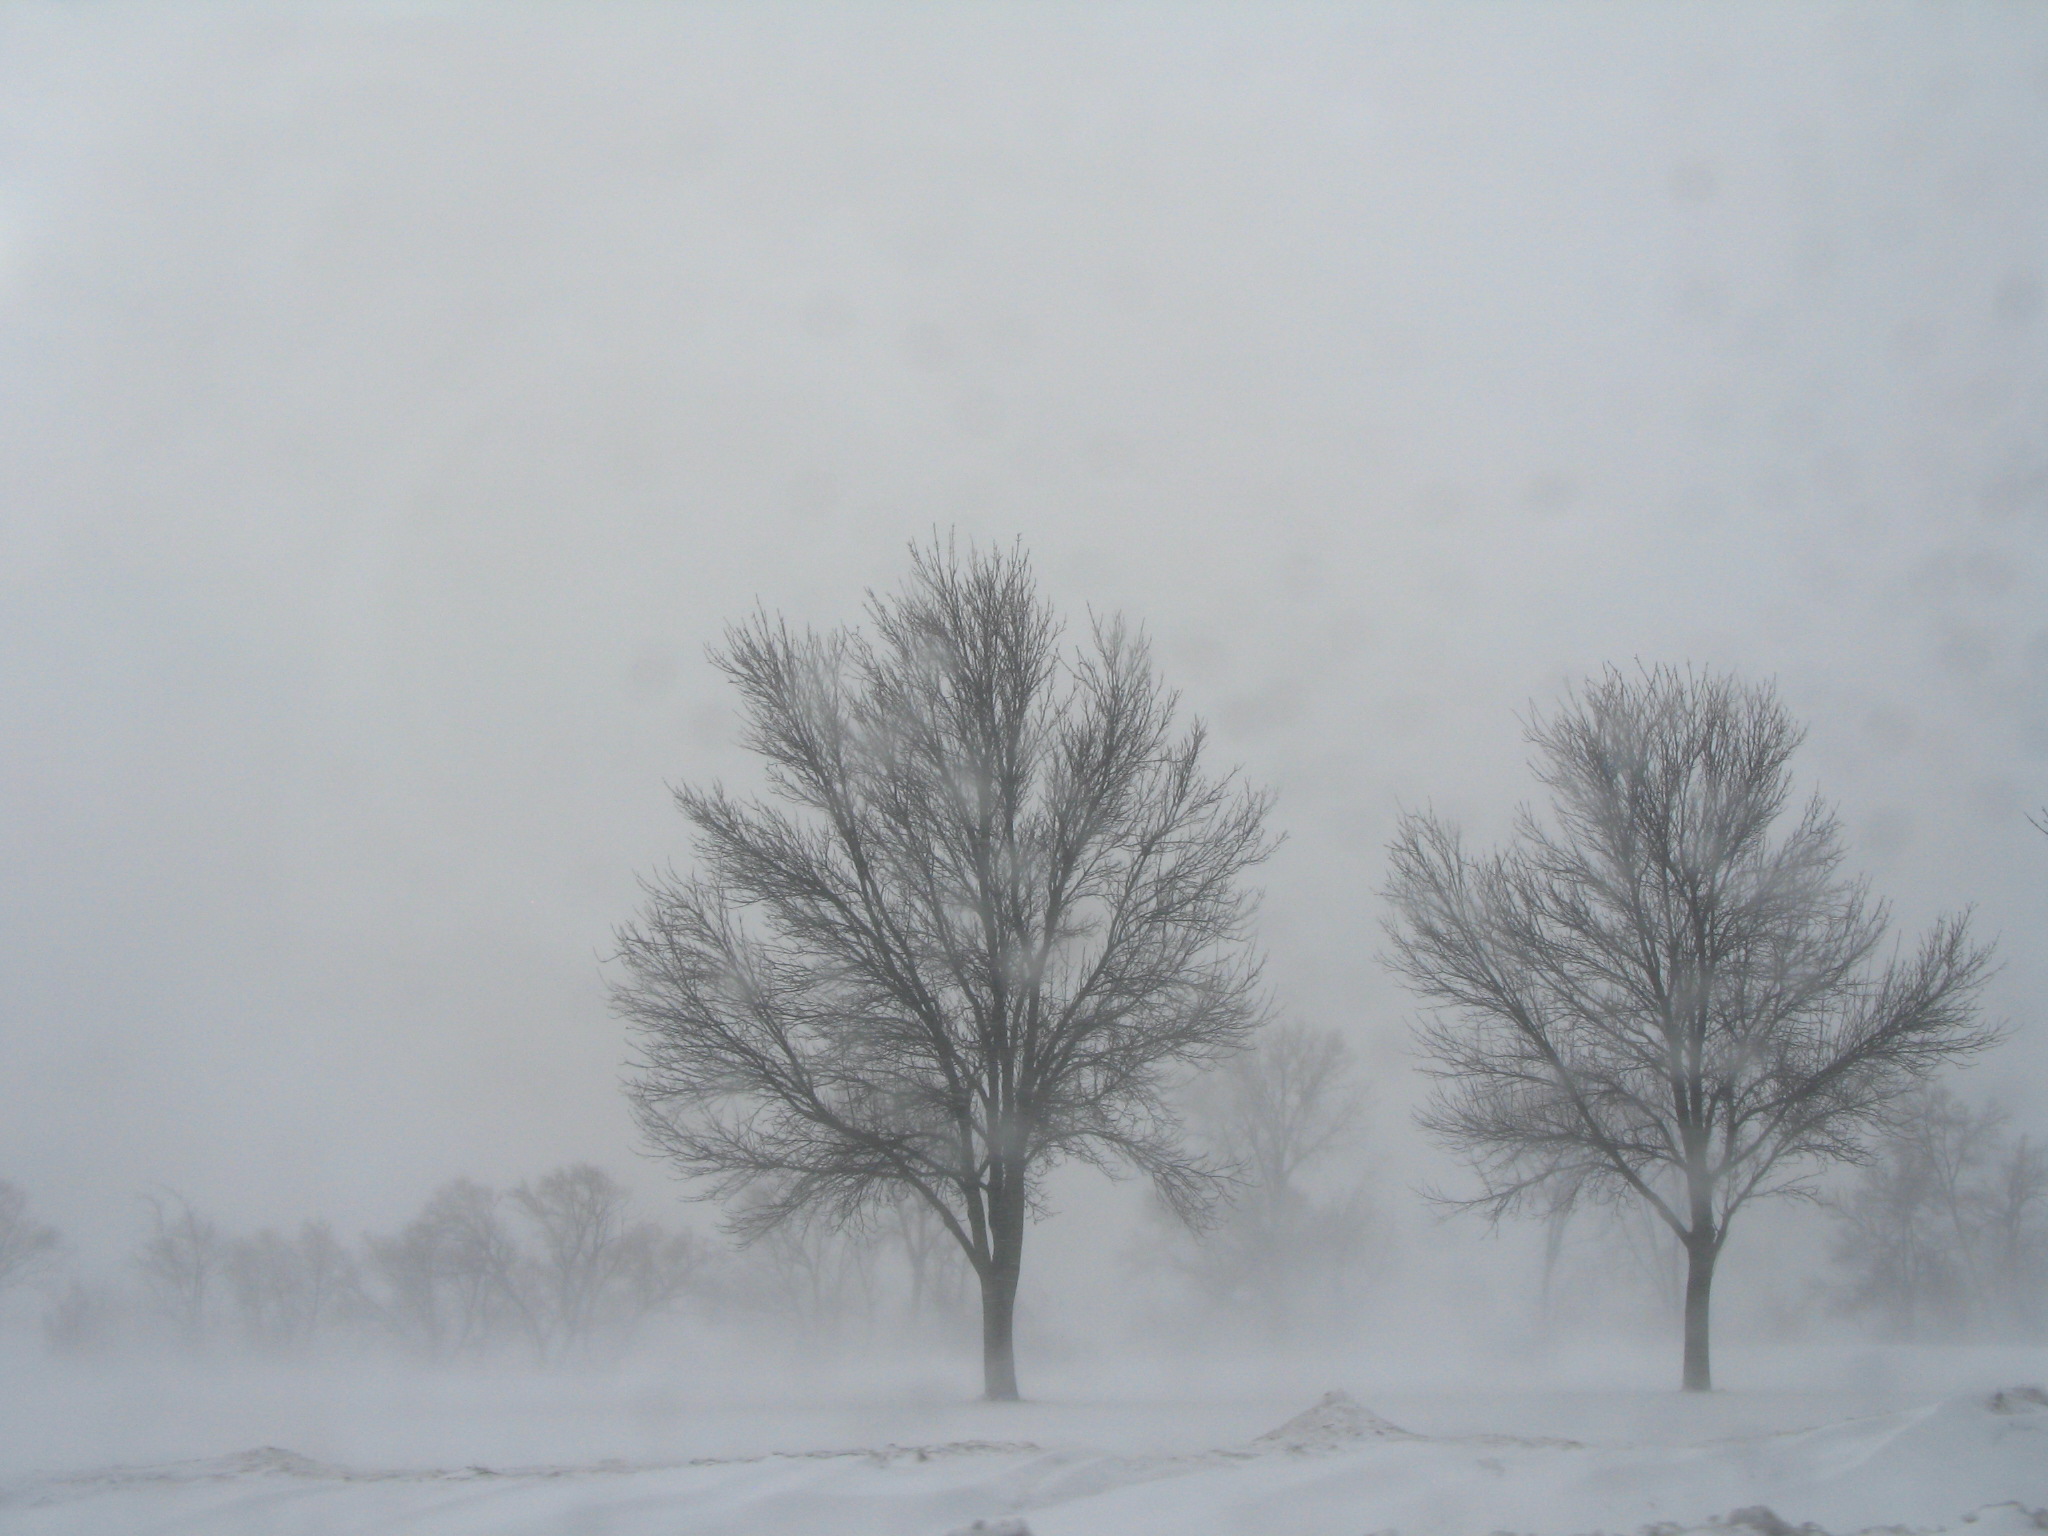 Snowy trees near Olbrich Park